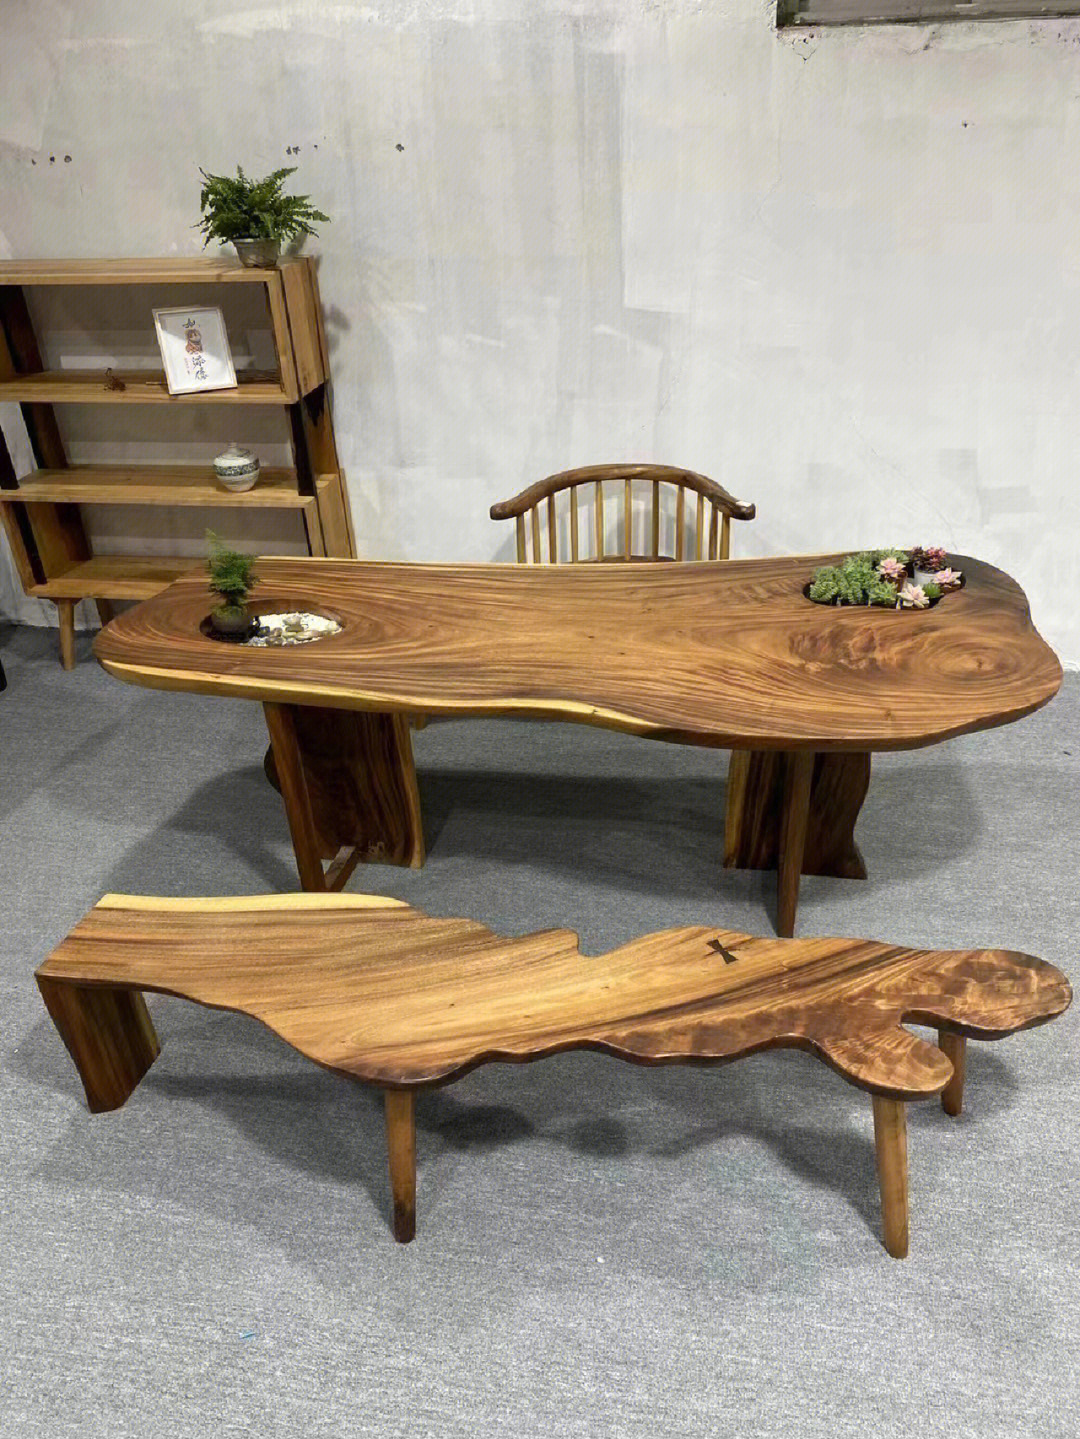 设计感十足的实木大板桌